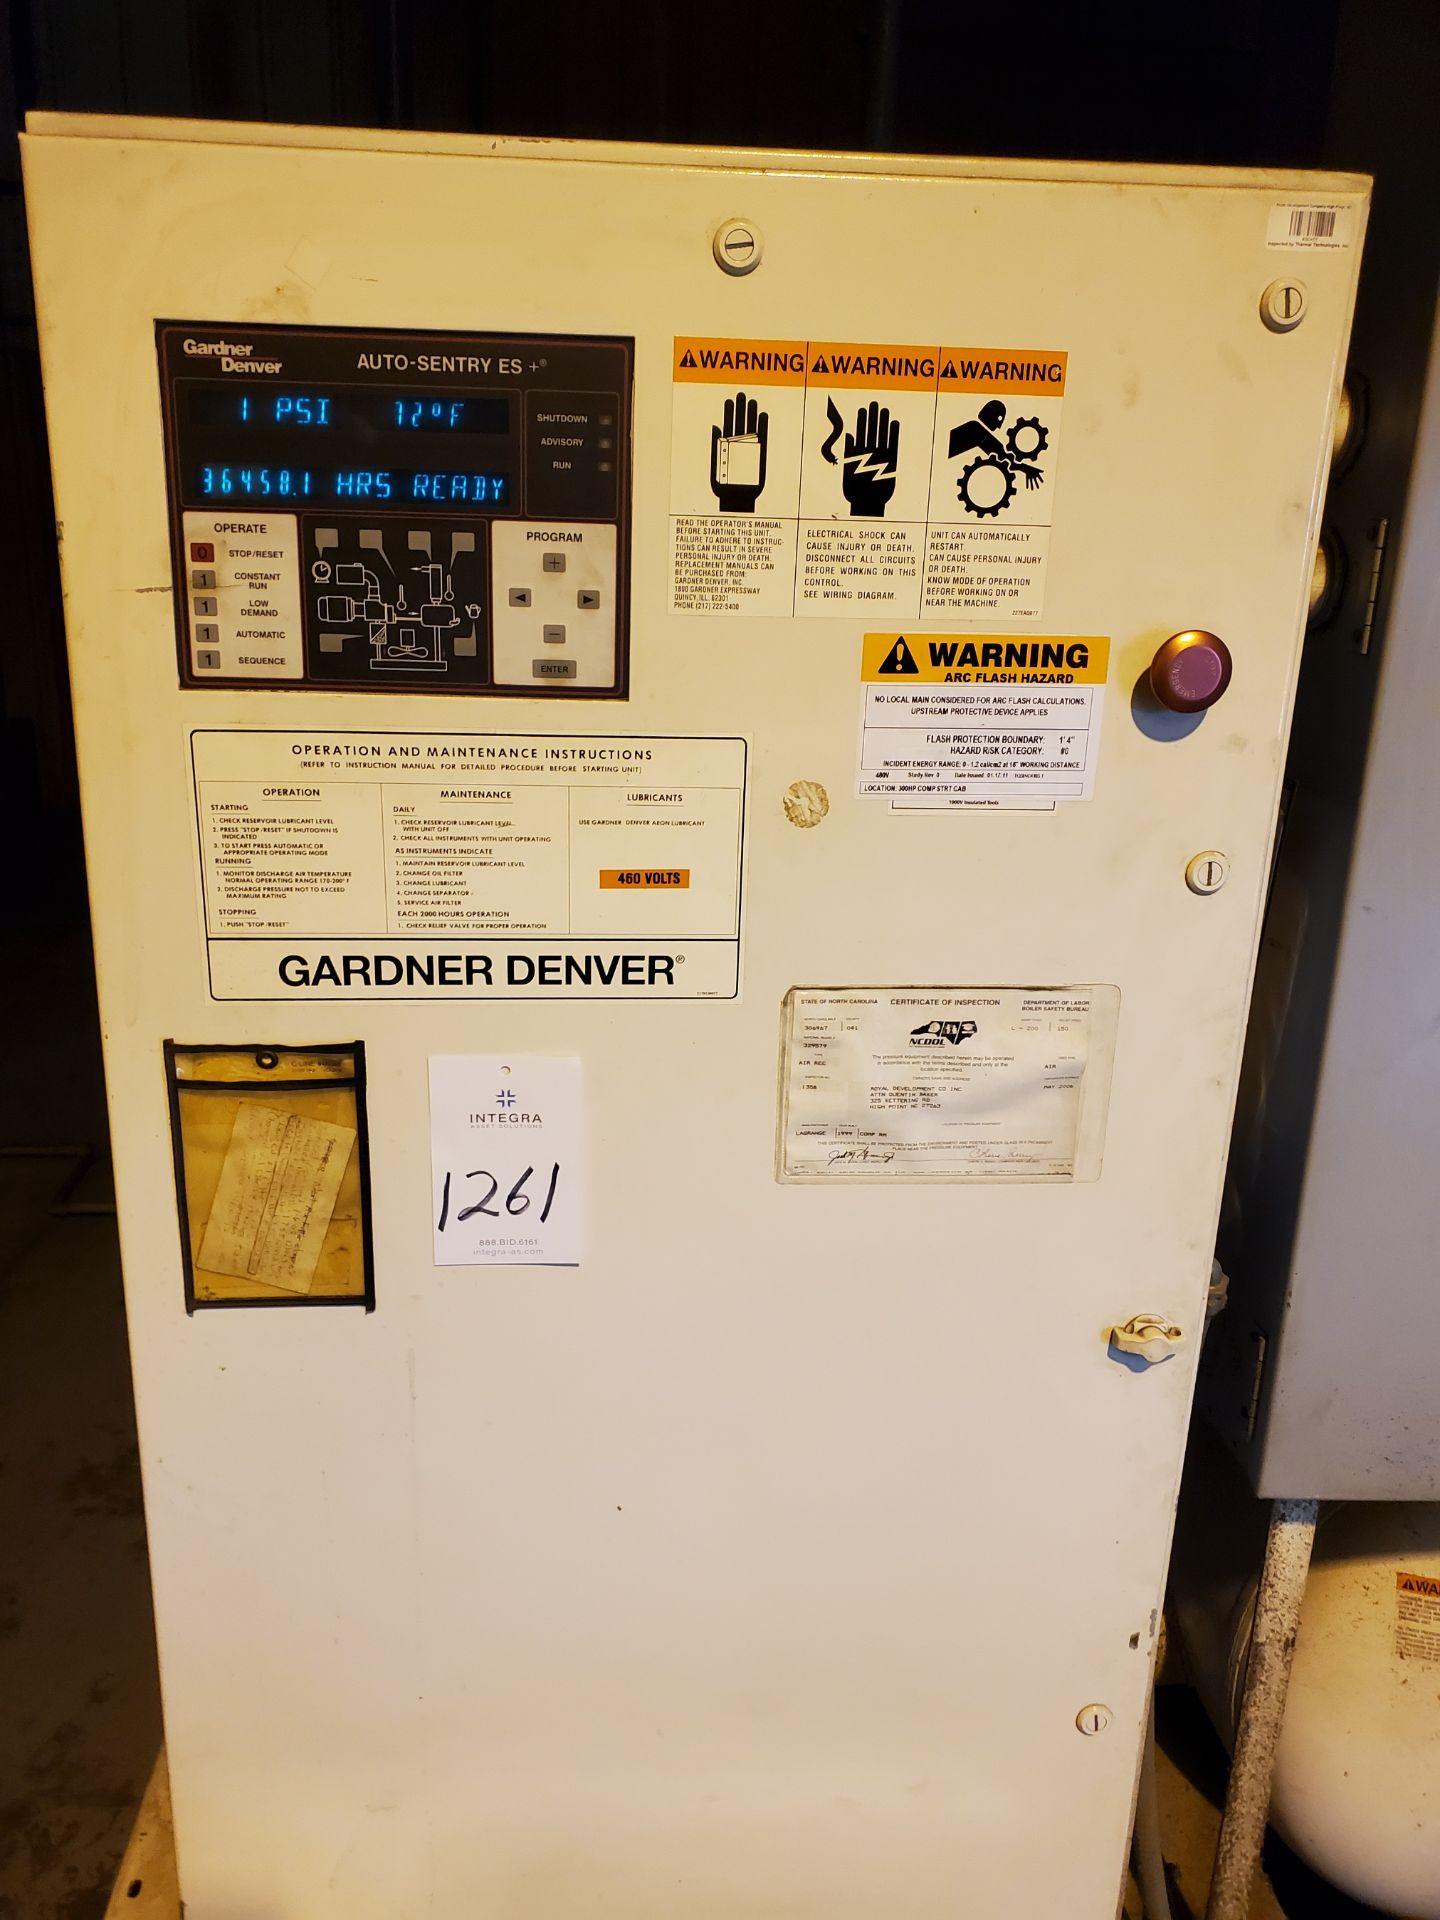 Garner Denver EAU99G 300-HP Rotary Screw Air Compressor - Image 3 of 3